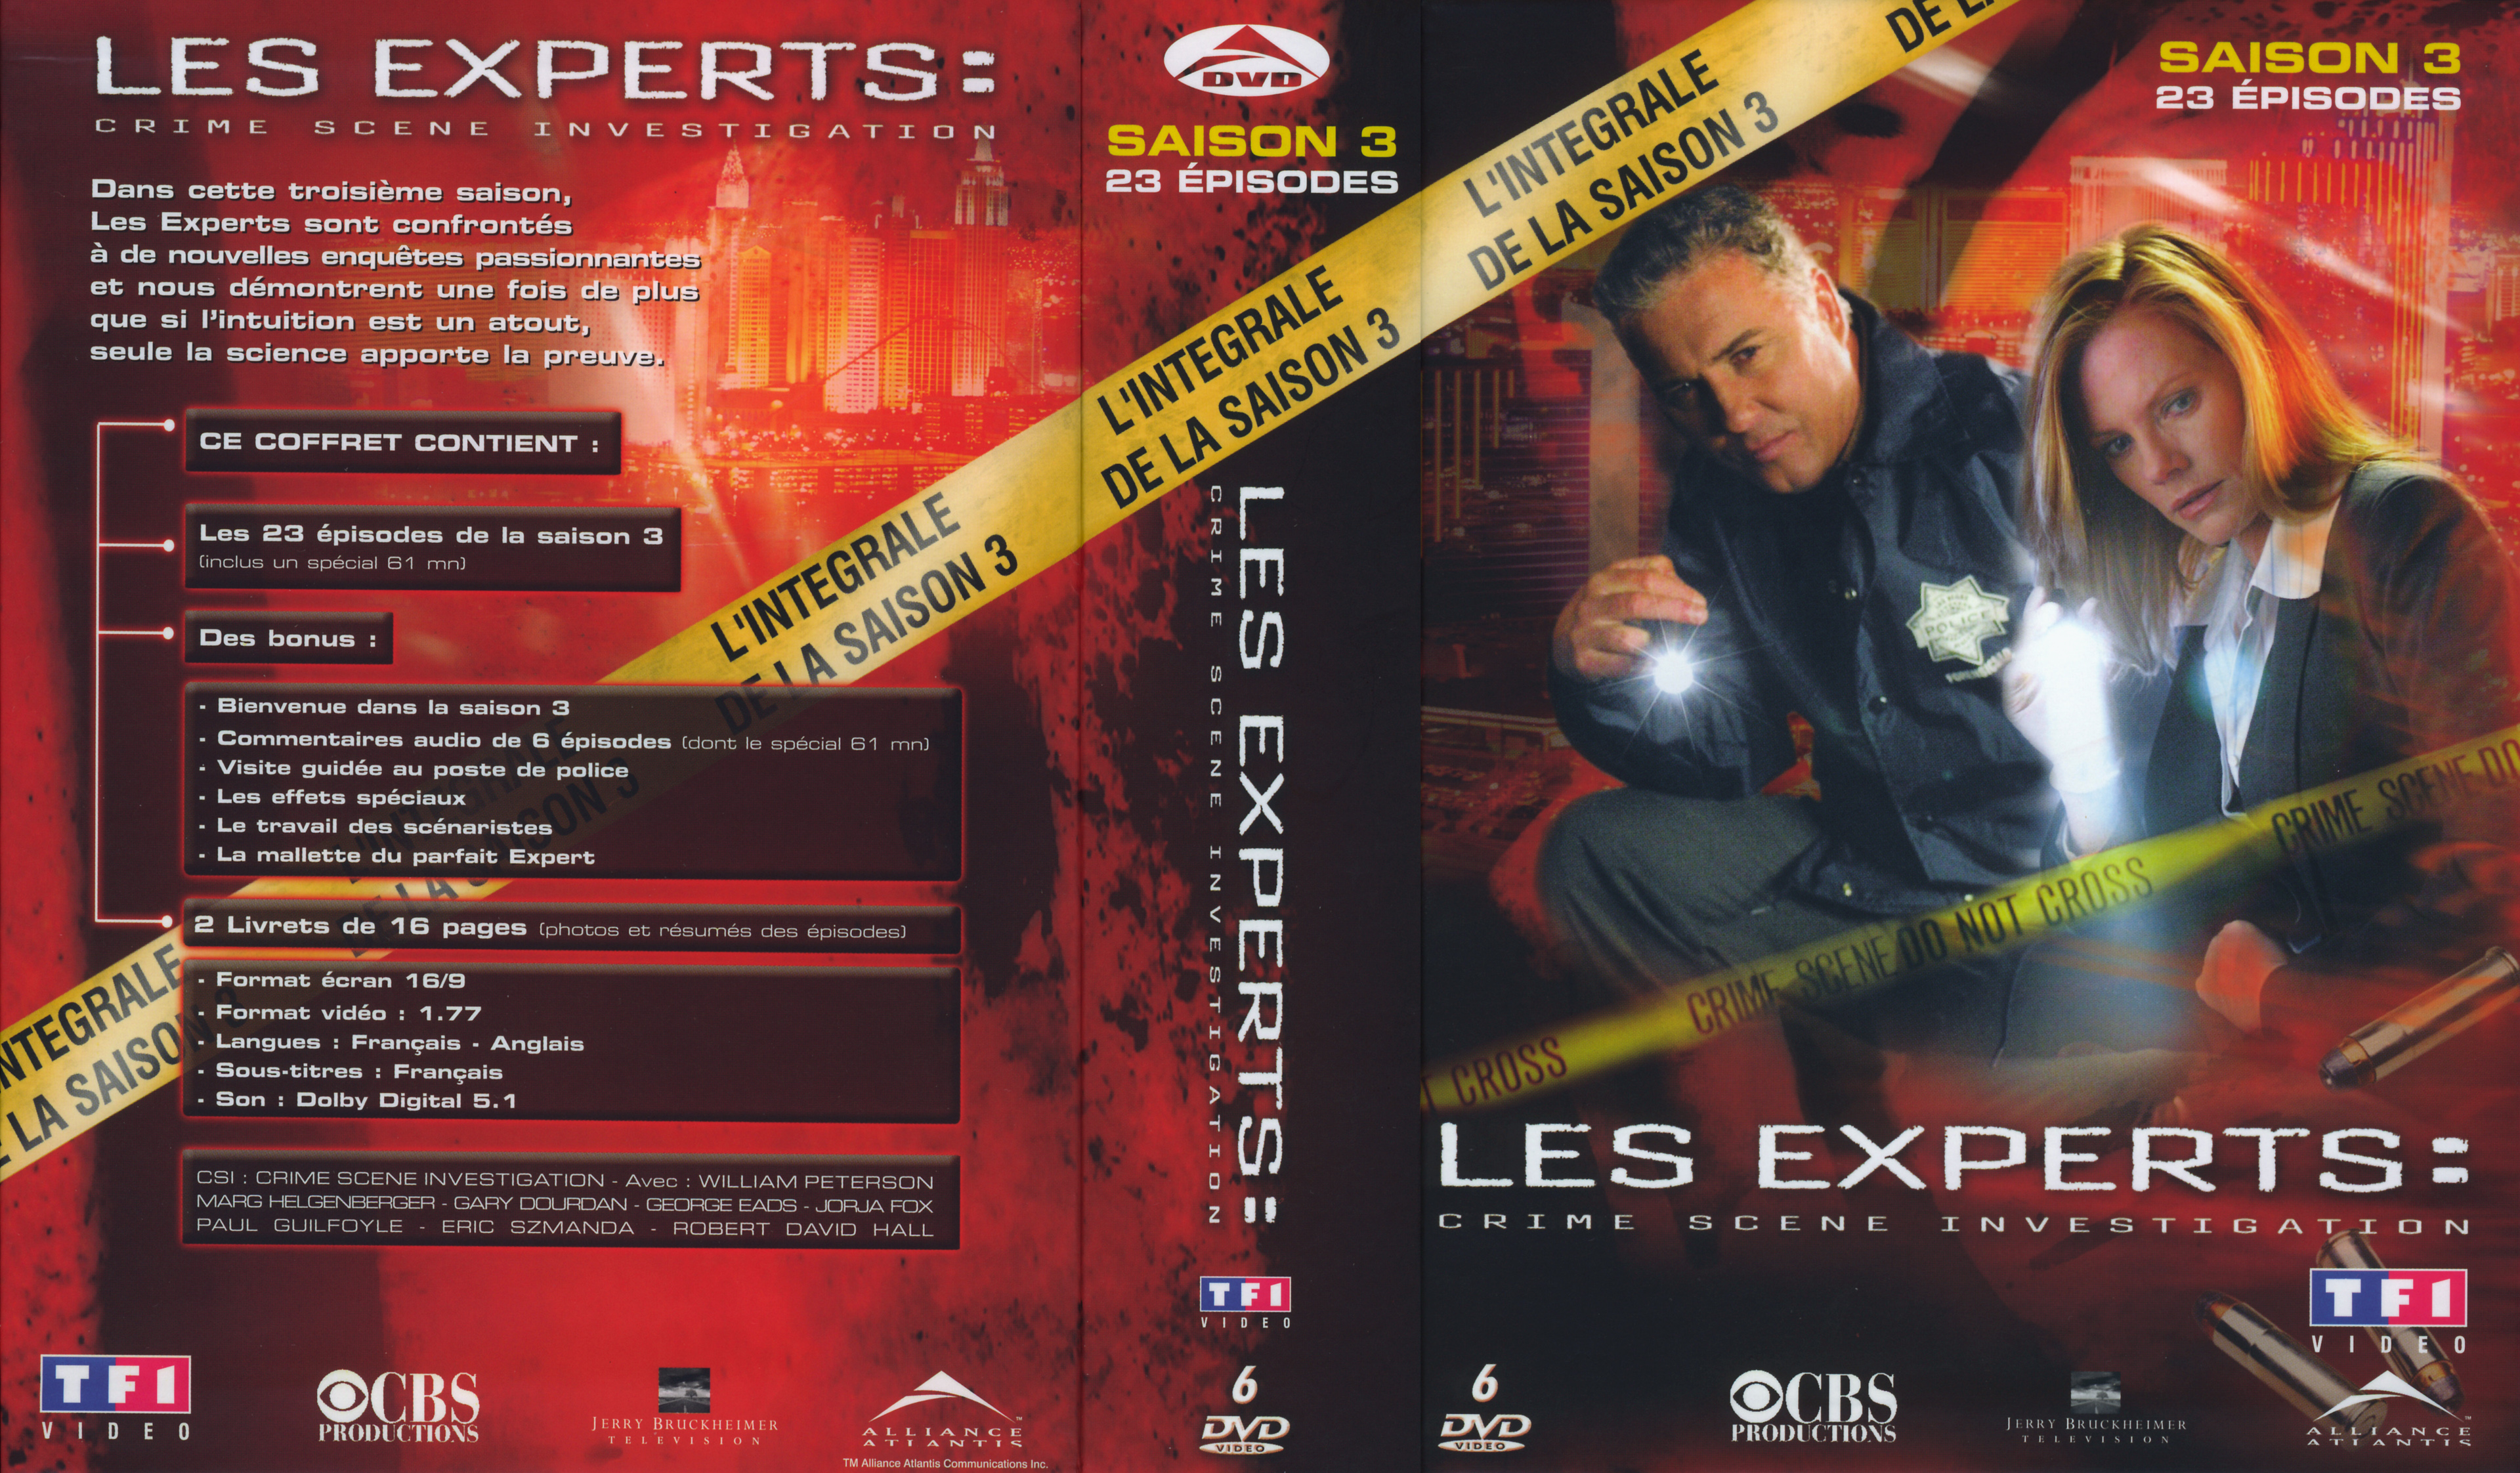 Jaquette DVD Les experts saison 3 COFFRET